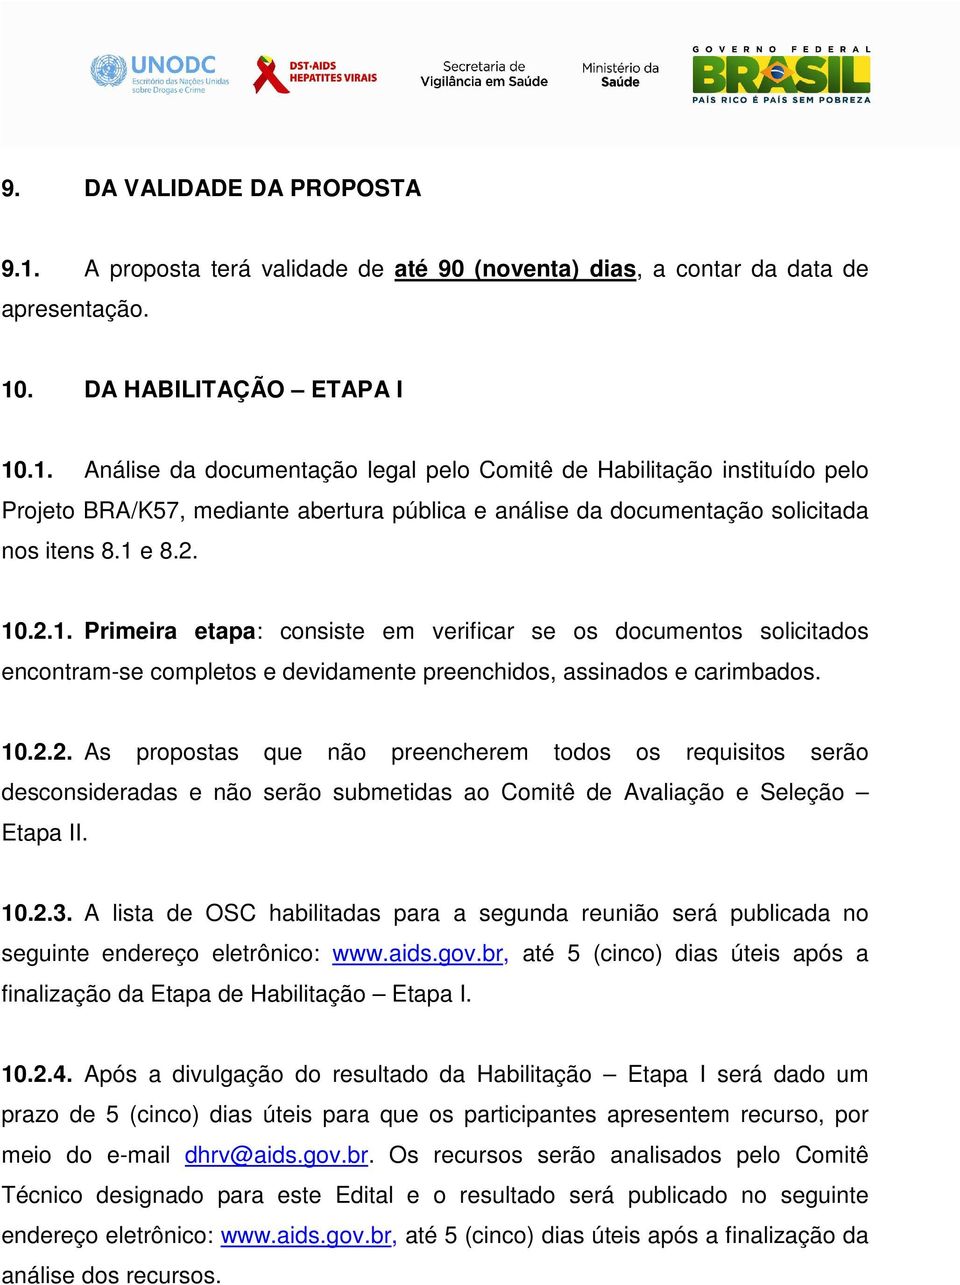 10.2.3. A lista de OSC habilitadas para a segunda reunião será publicada no seguinte endereço eletrônico: www.aids.gov.br, até 5 (cinco) dias úteis após a finalização da Etapa de Habilitação Etapa I.